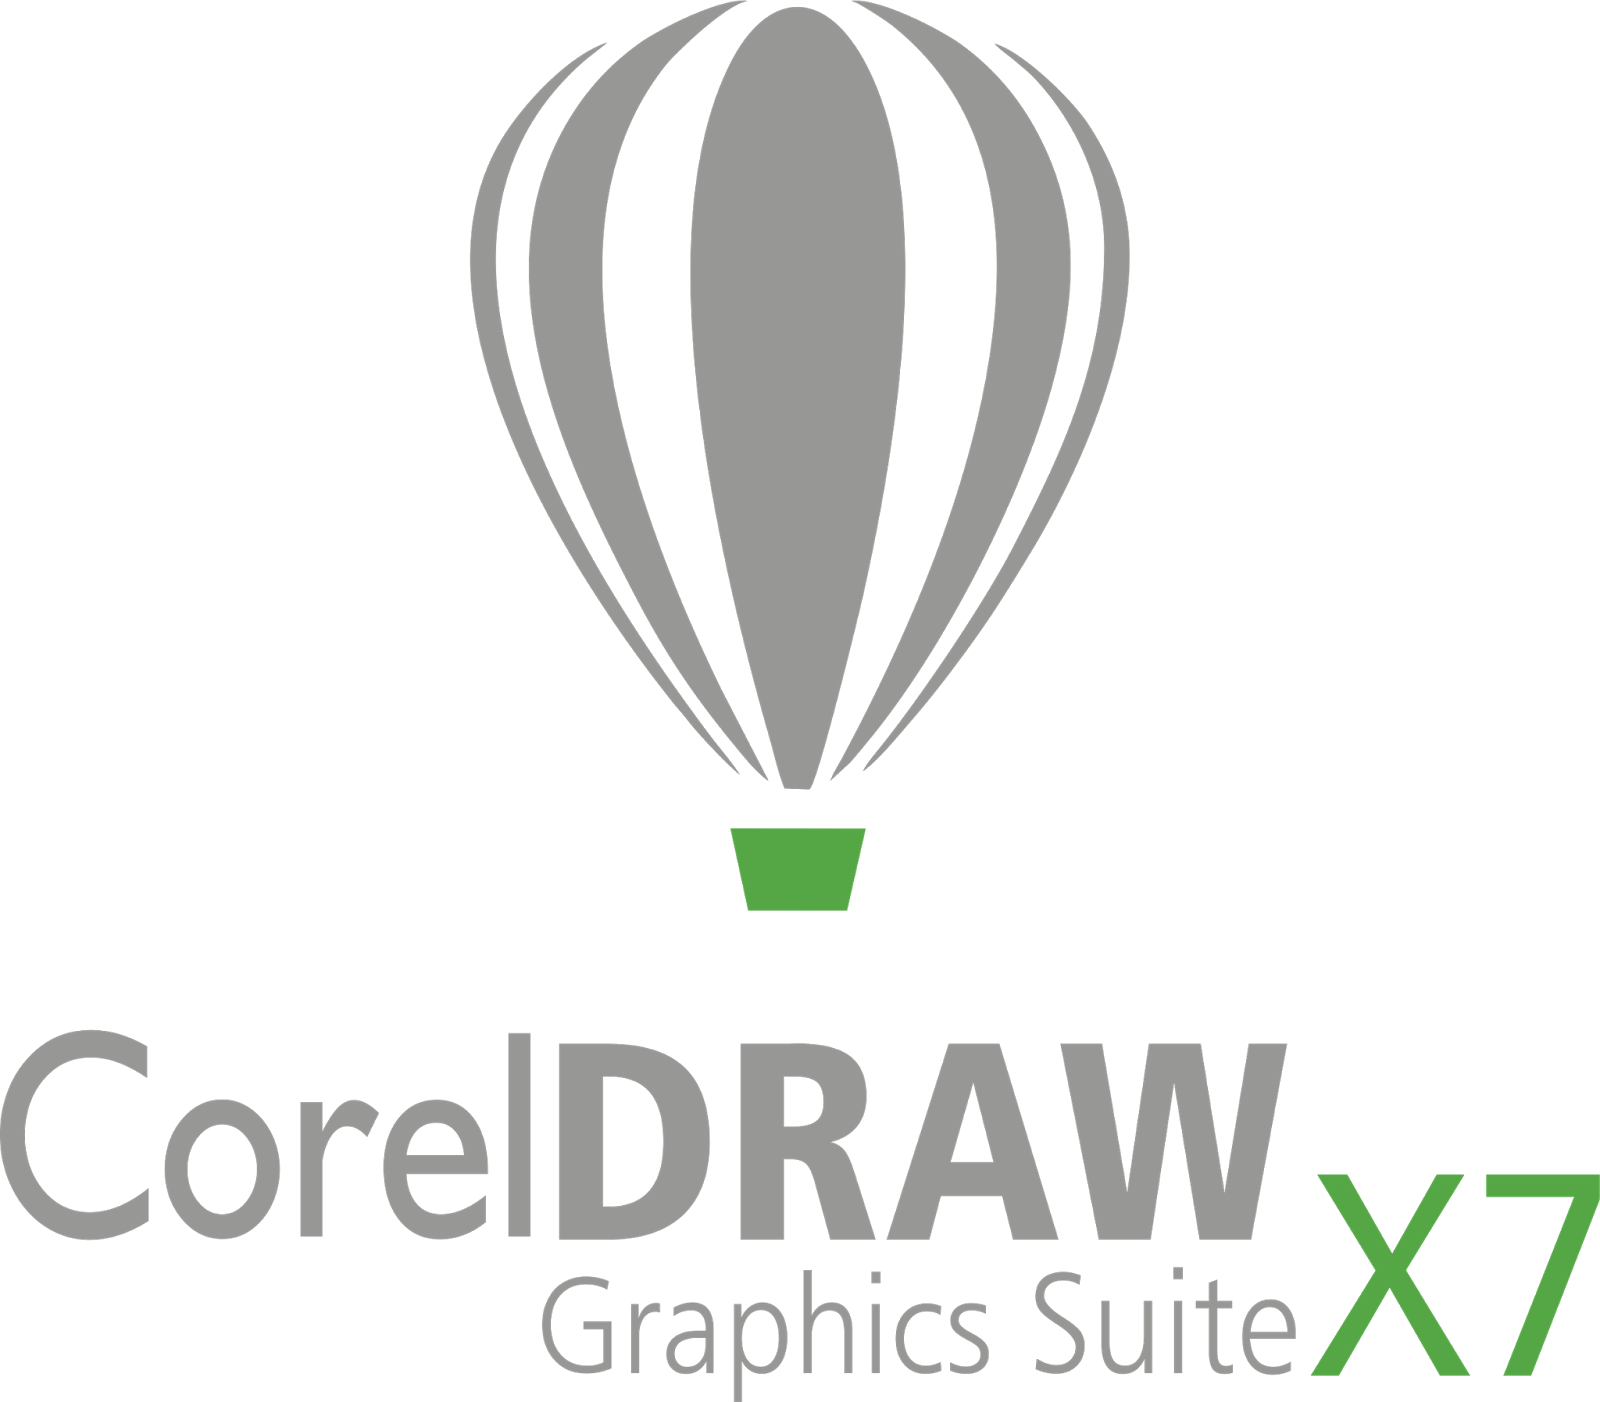 coreldraw x7 free download full version